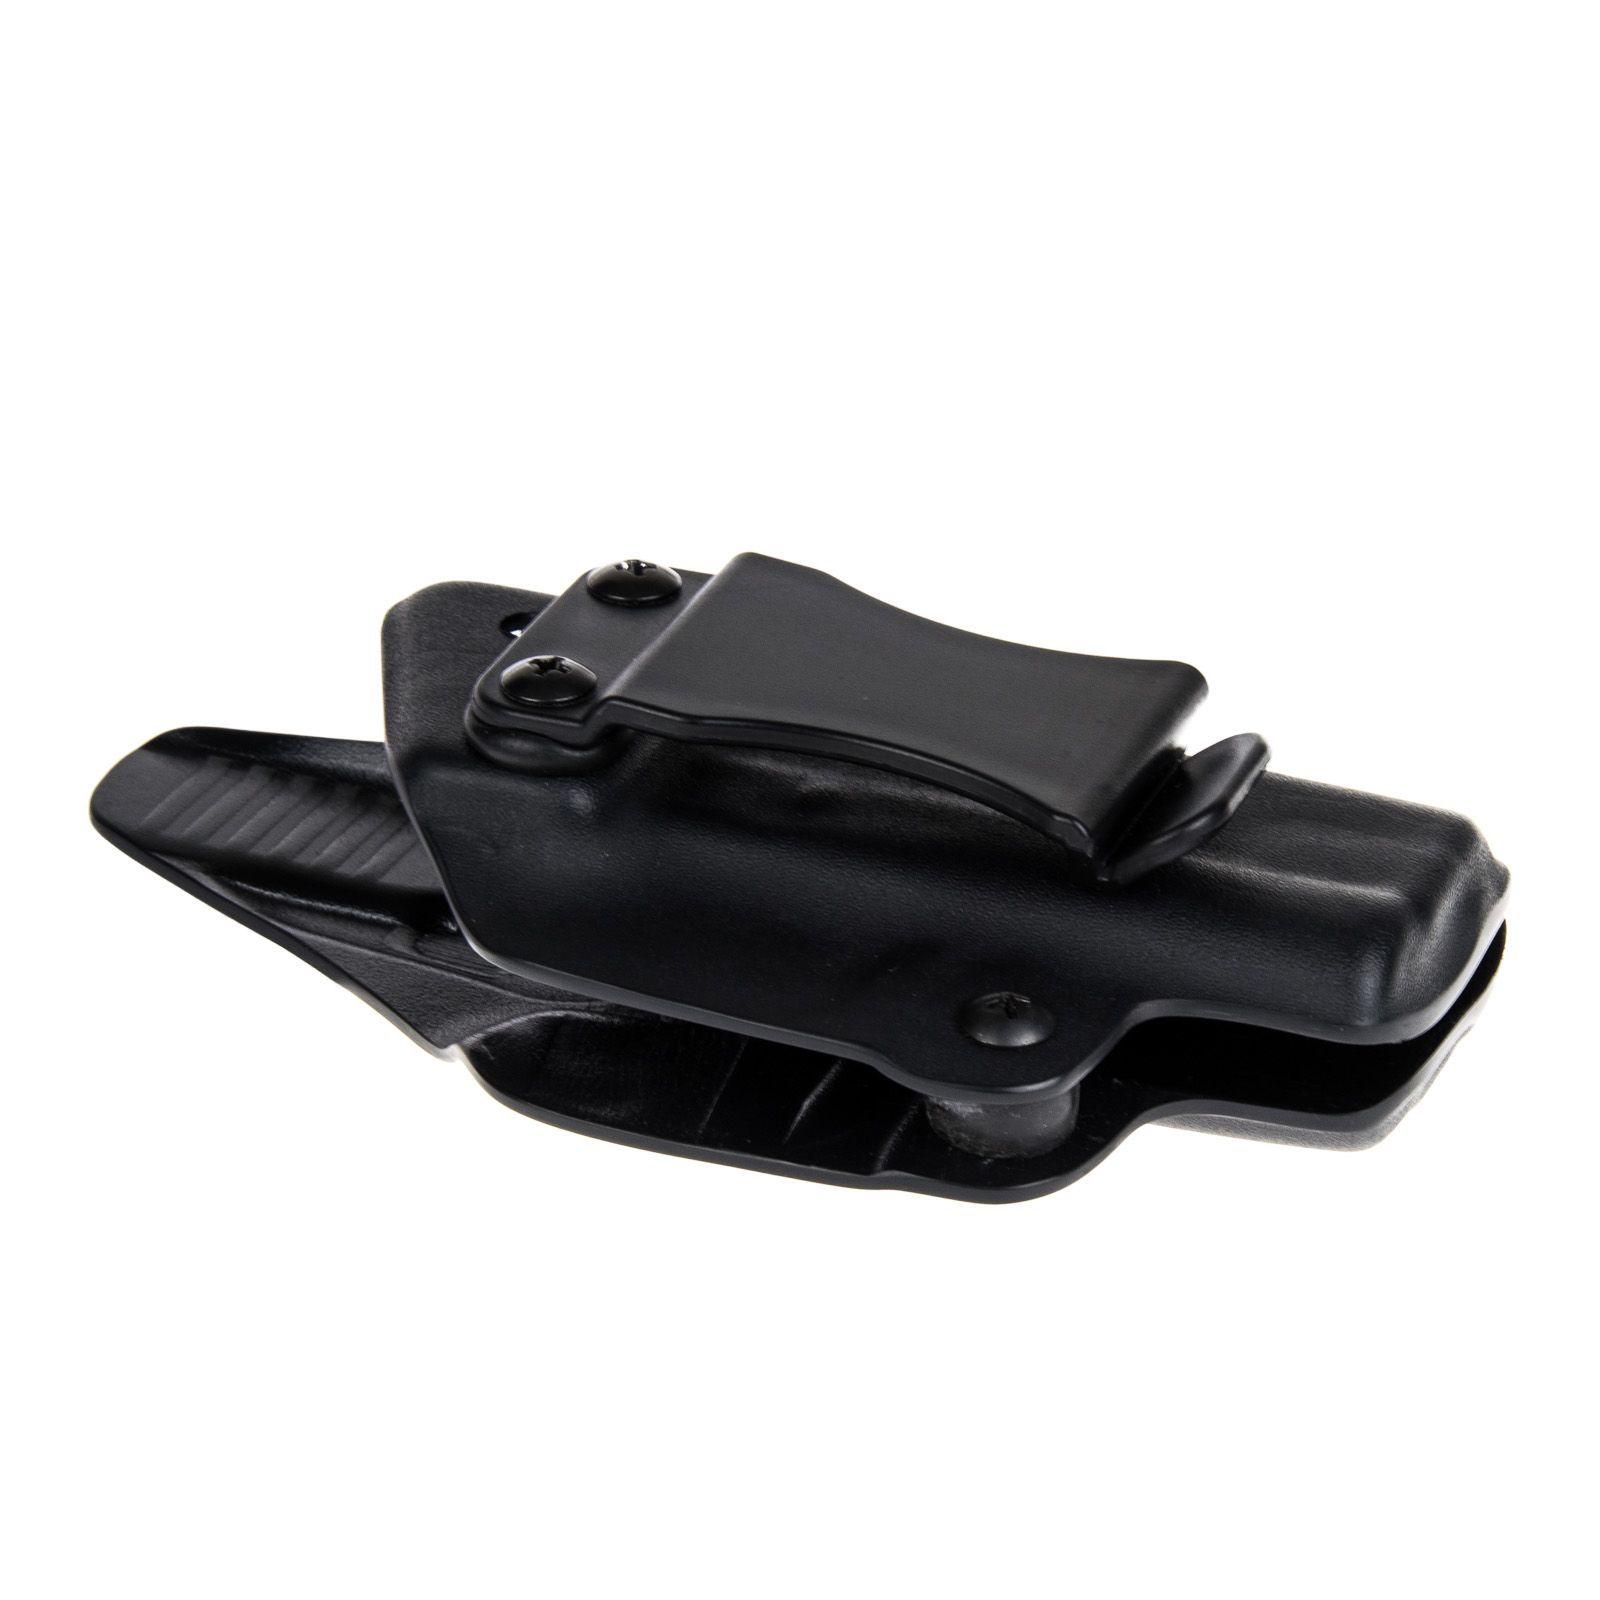 Vnitřní pouzdro RHholster, plný sweatguard, černá/černá (CZ 75 D Compact)